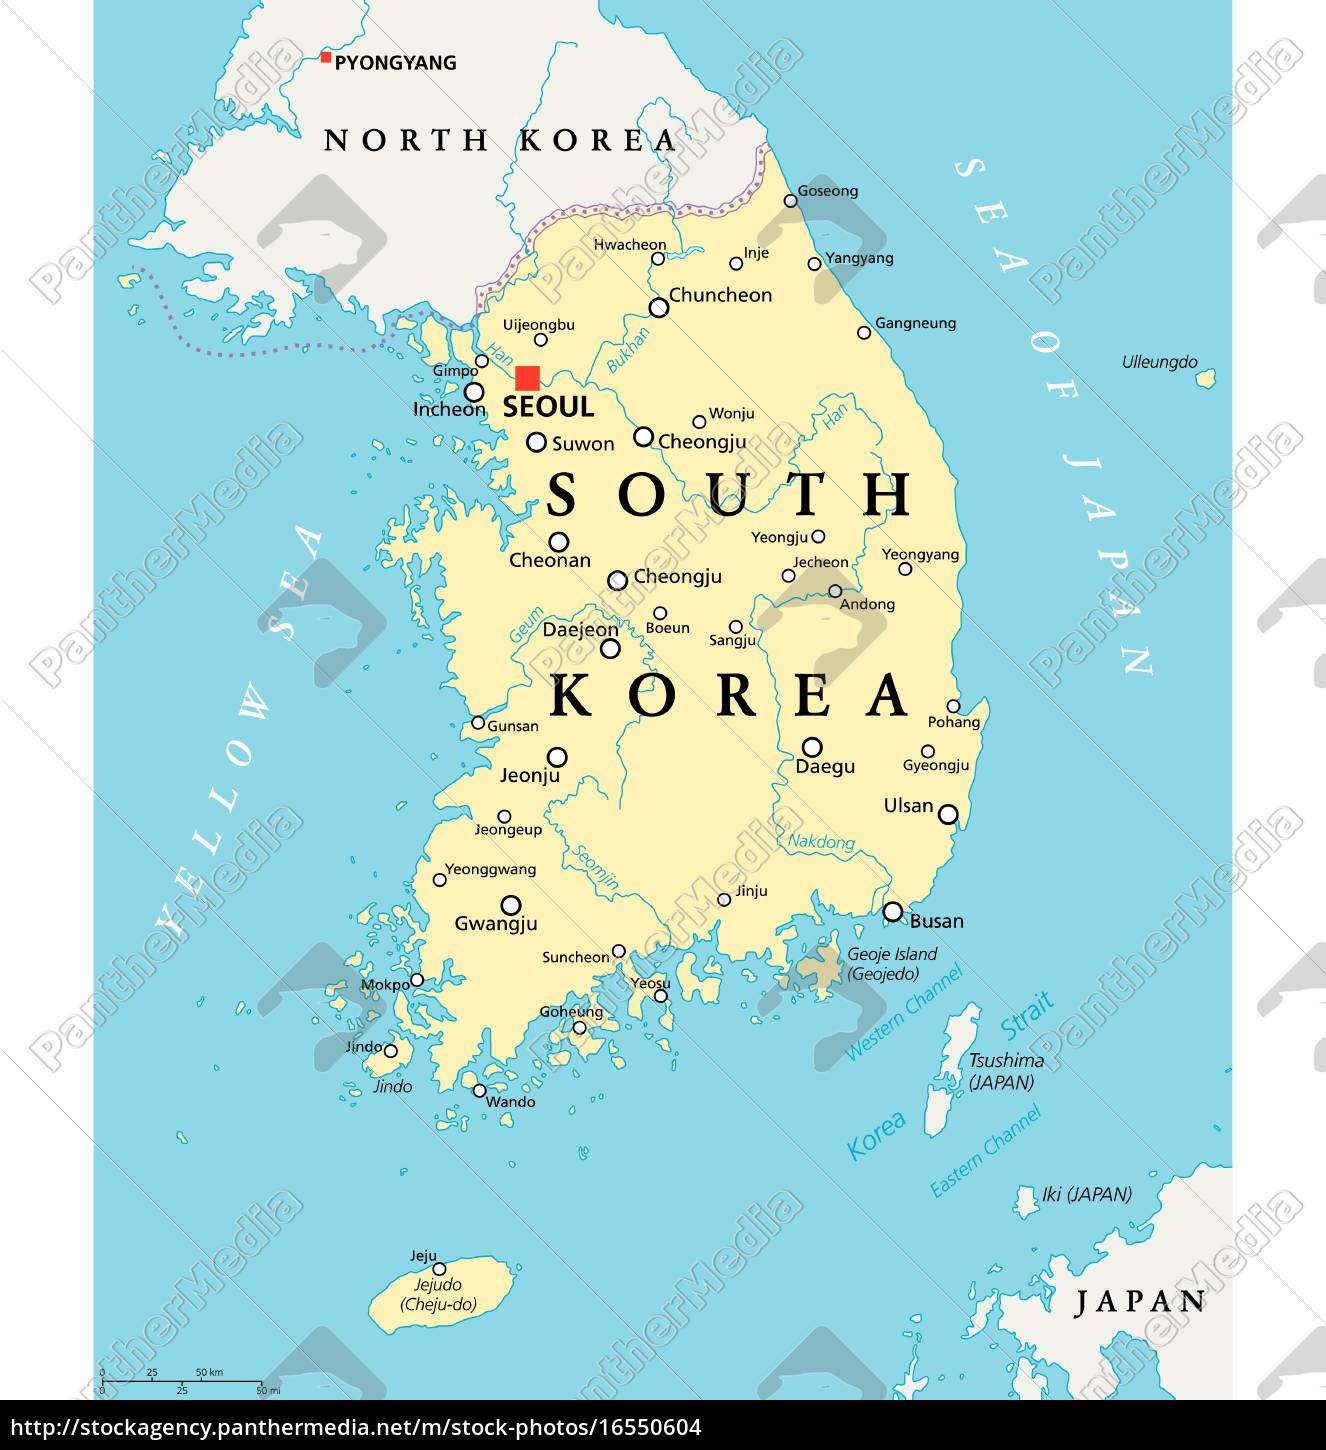 mapa político de corea del sur - Stockphoto - #16550604 | Agencia de